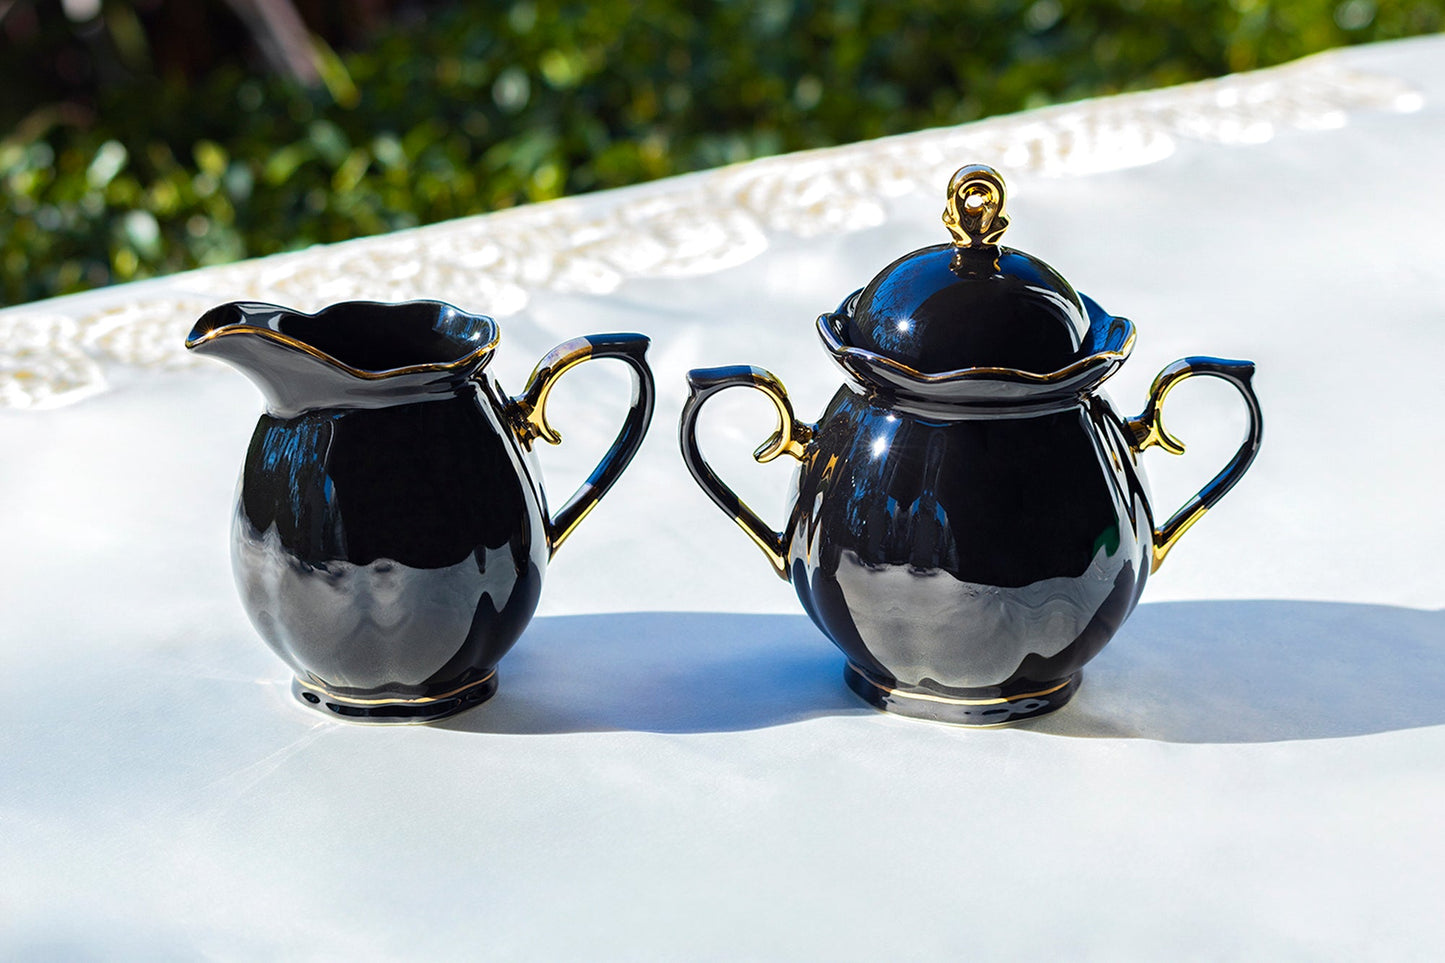 Black Gold Teapot + Sugar Creamer + 4 Spider Black Gold Luster Tea Cup and Saucer Sets